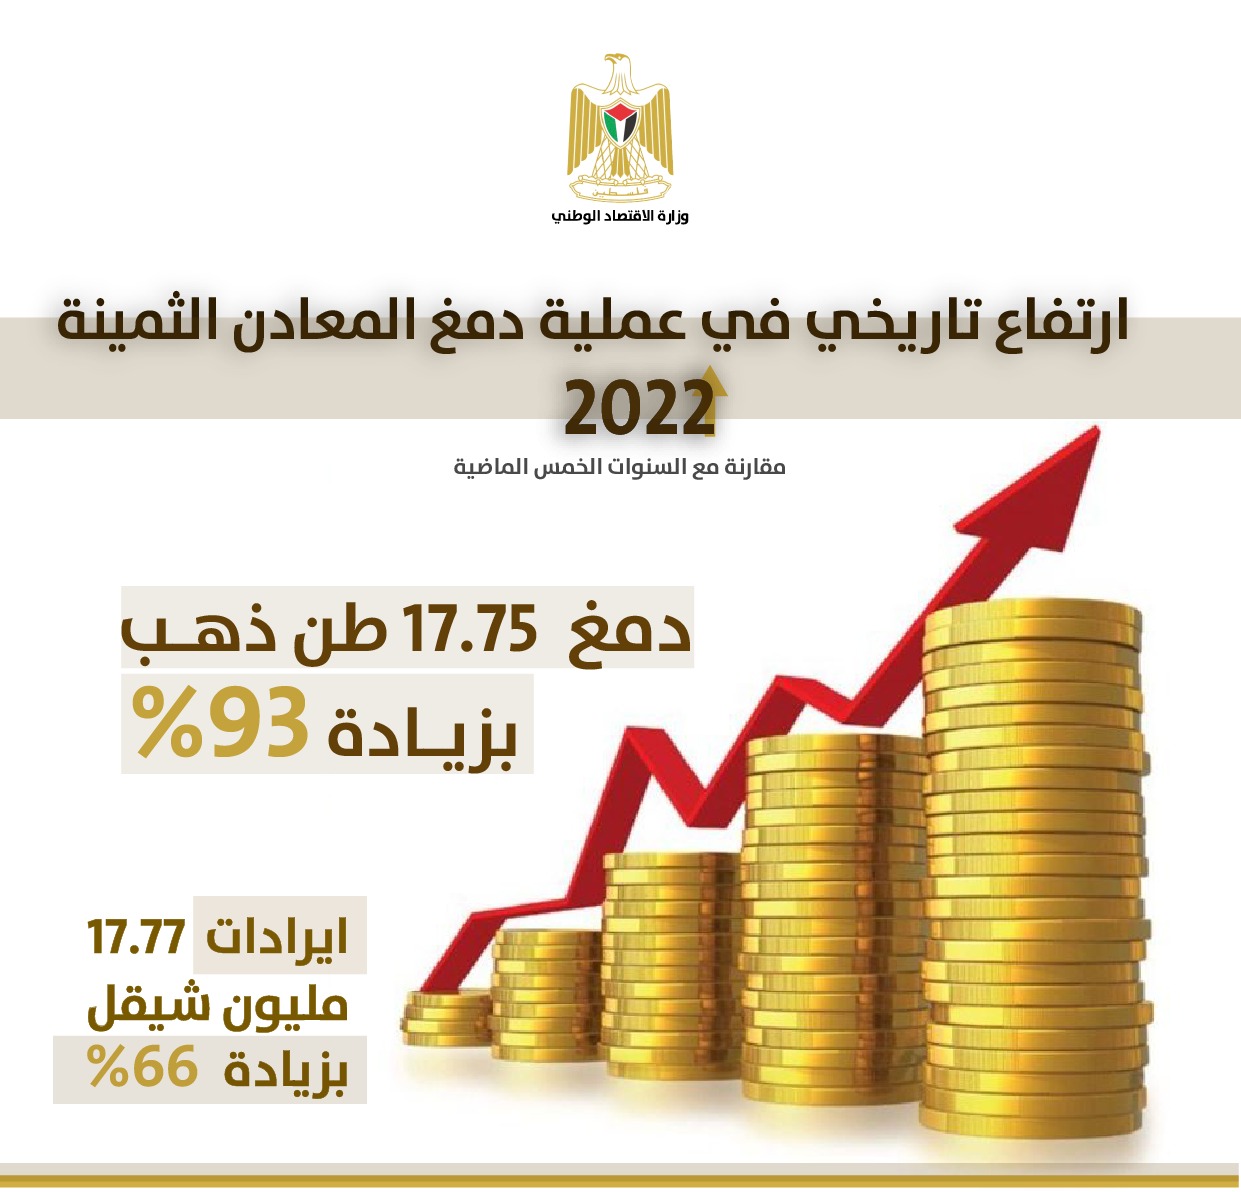 وزارة الاقتصاد: ارتفاع تاريخي في دمغ المعادن الثمينة، والذهب المحلي يستحوذ على النسبة الأعلى 